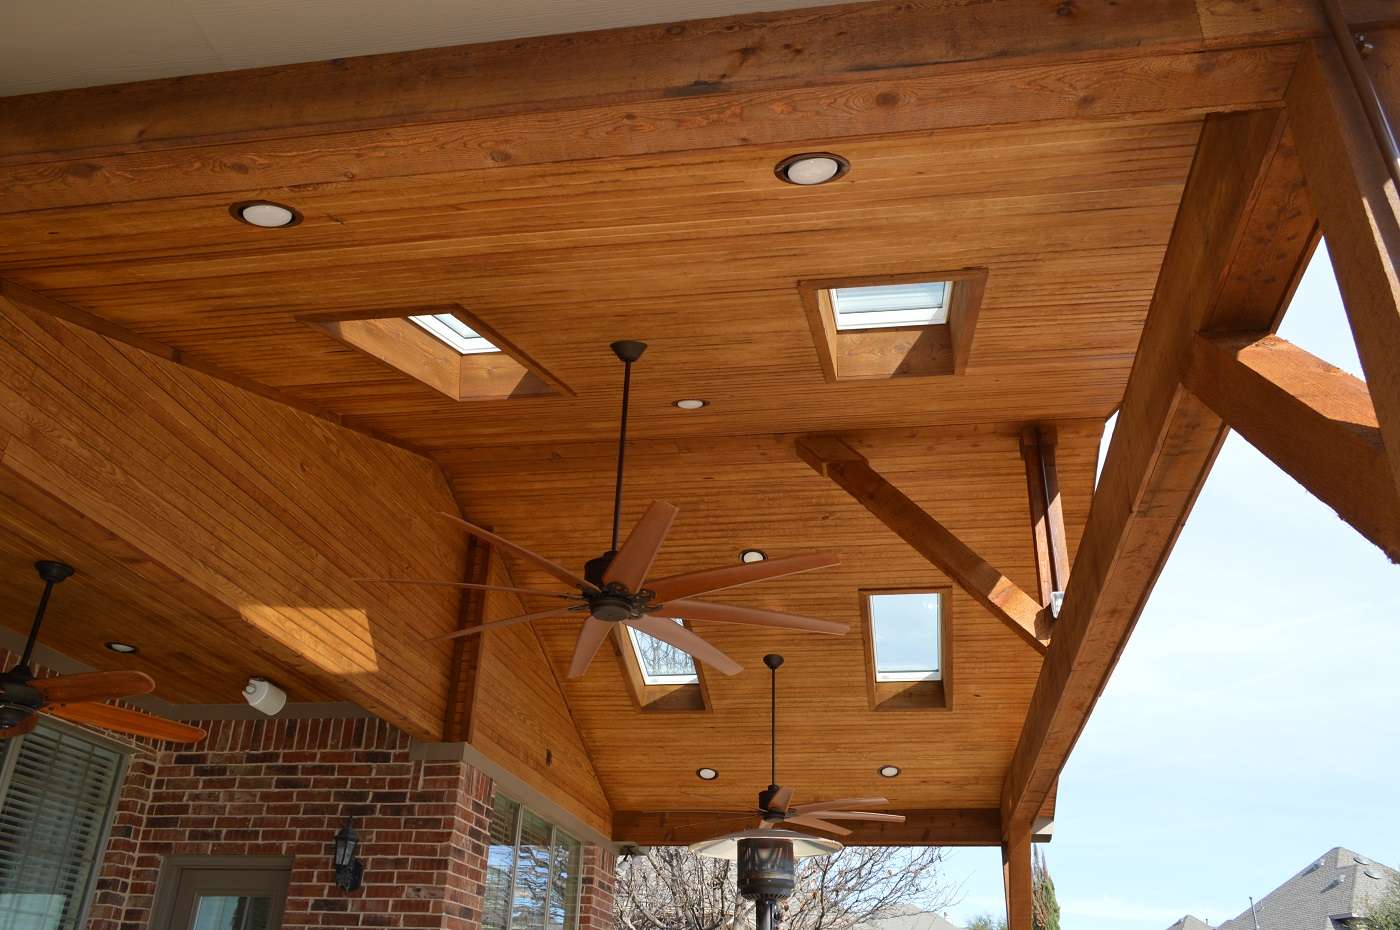 Wooden outdoor ceiling fan